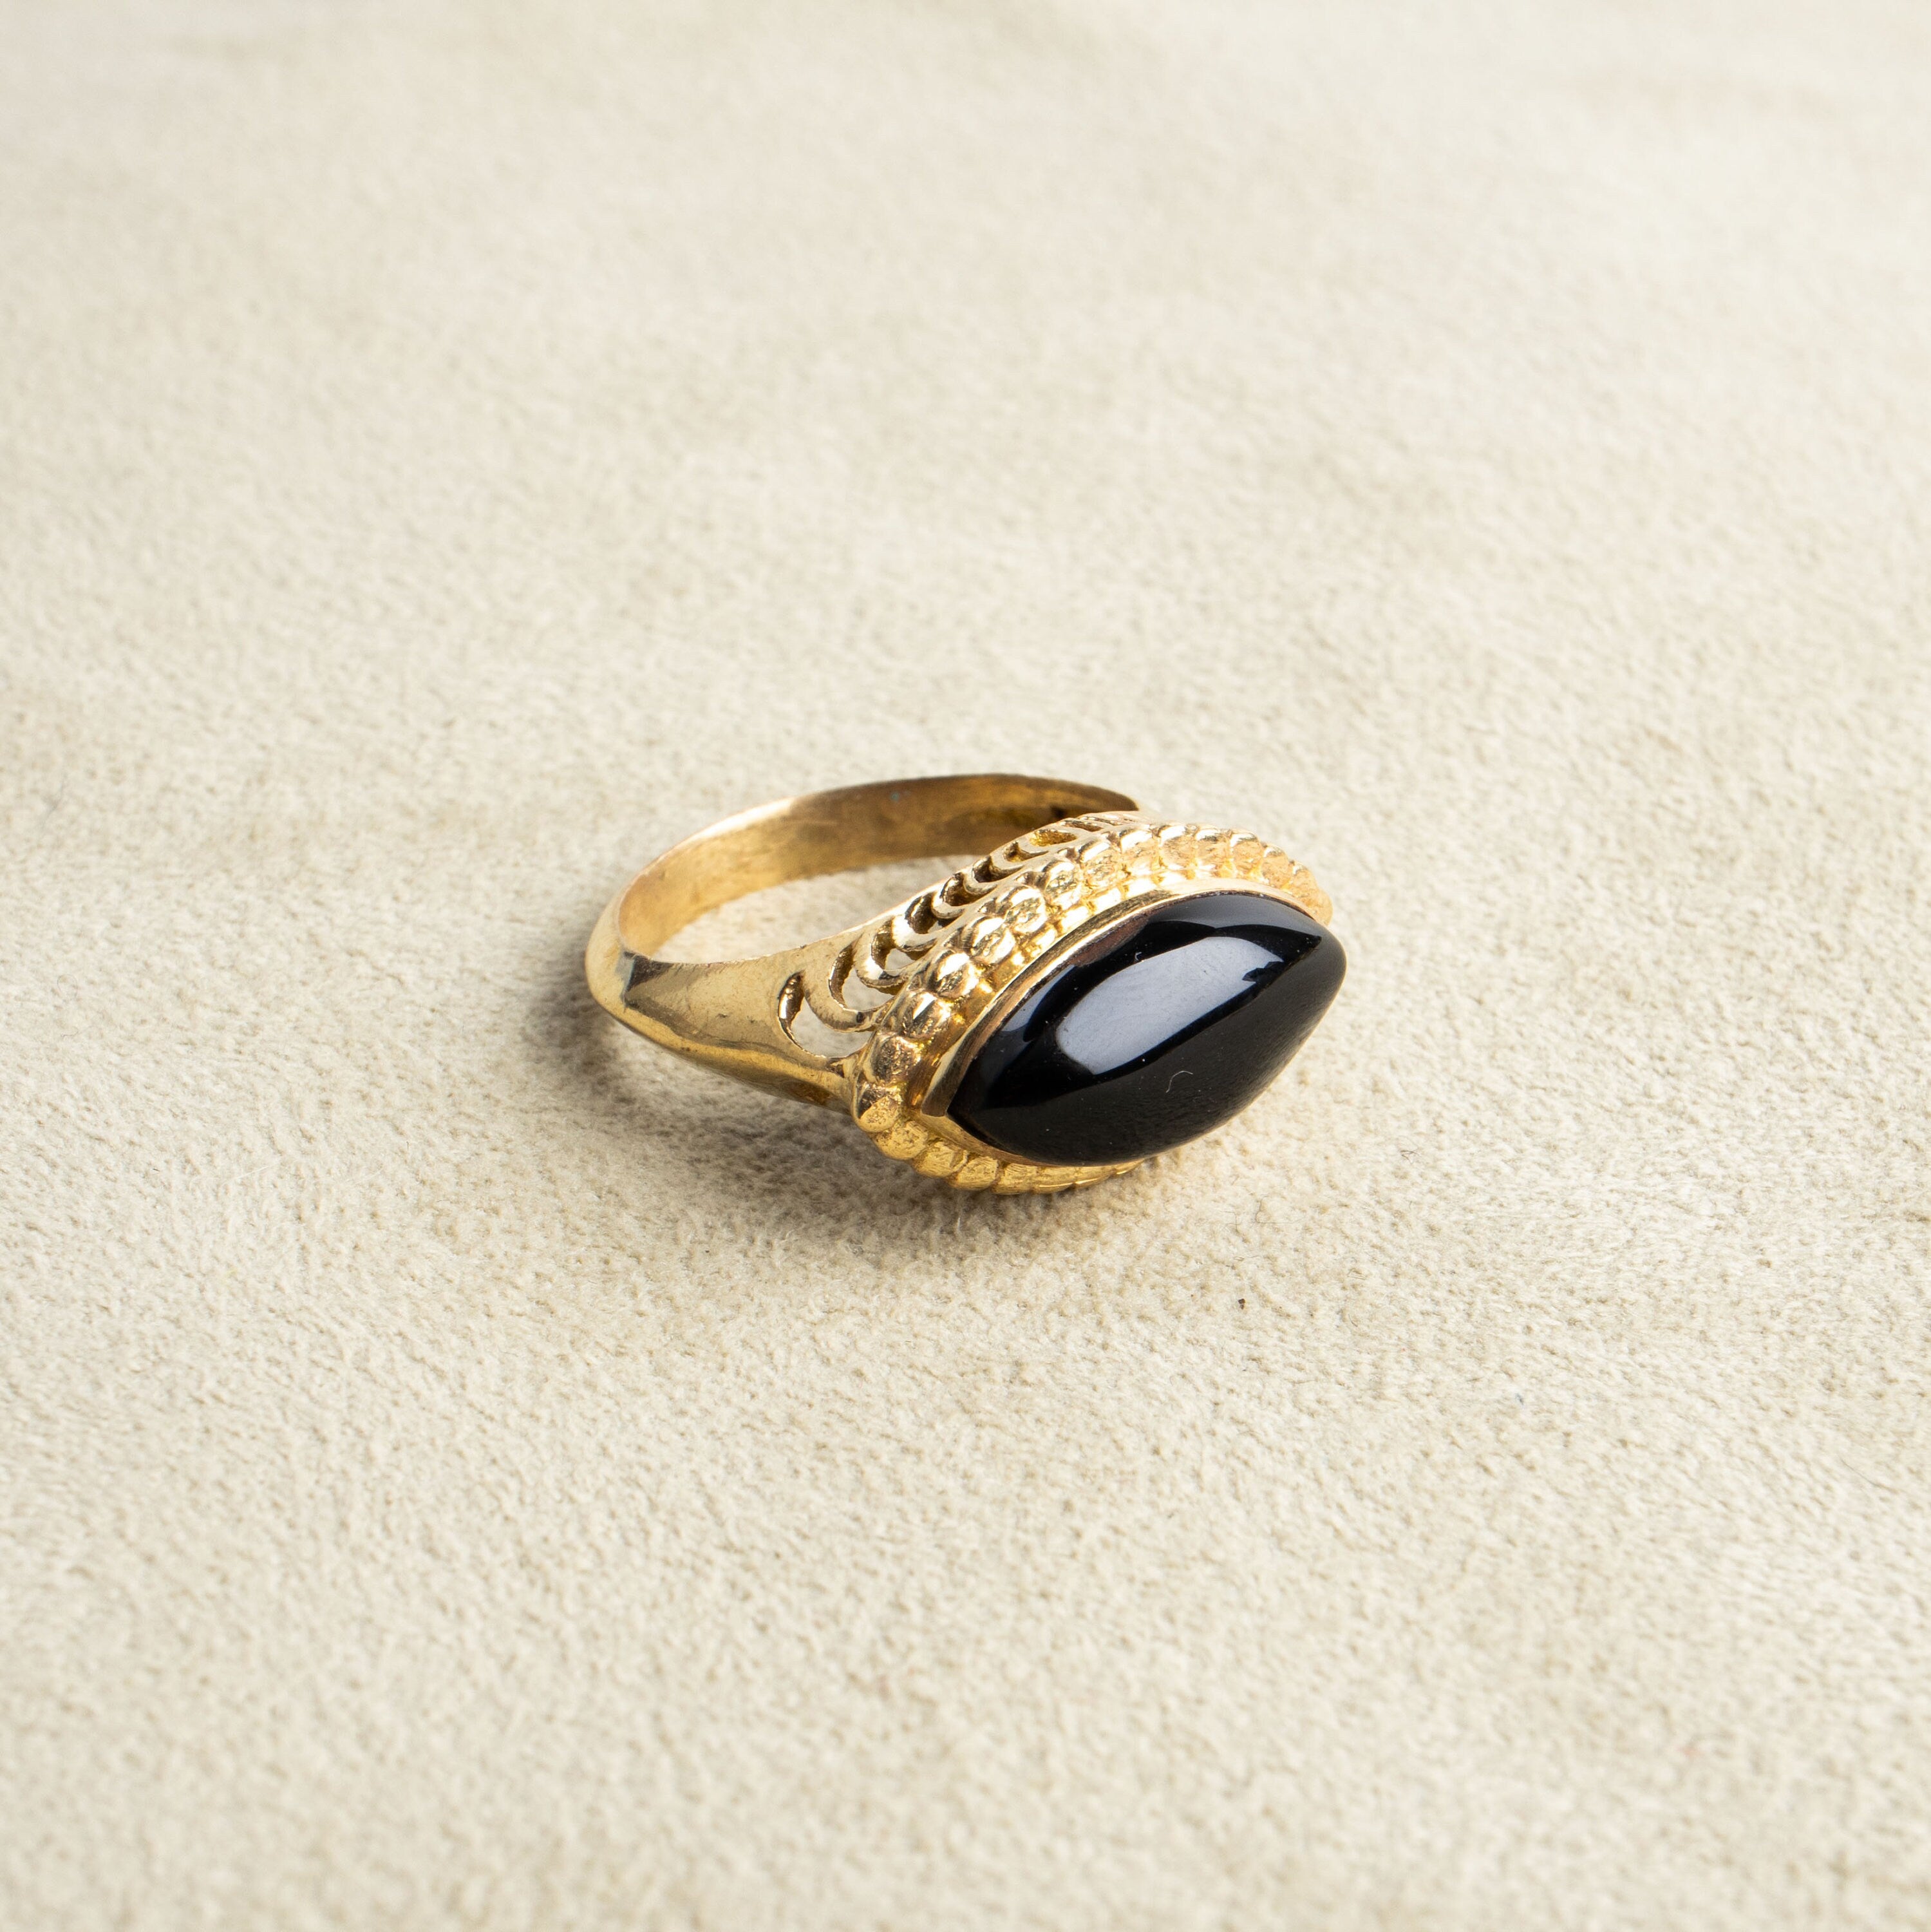 Augenförmiger schwarzer Onyx Ring groß gold handgemacht